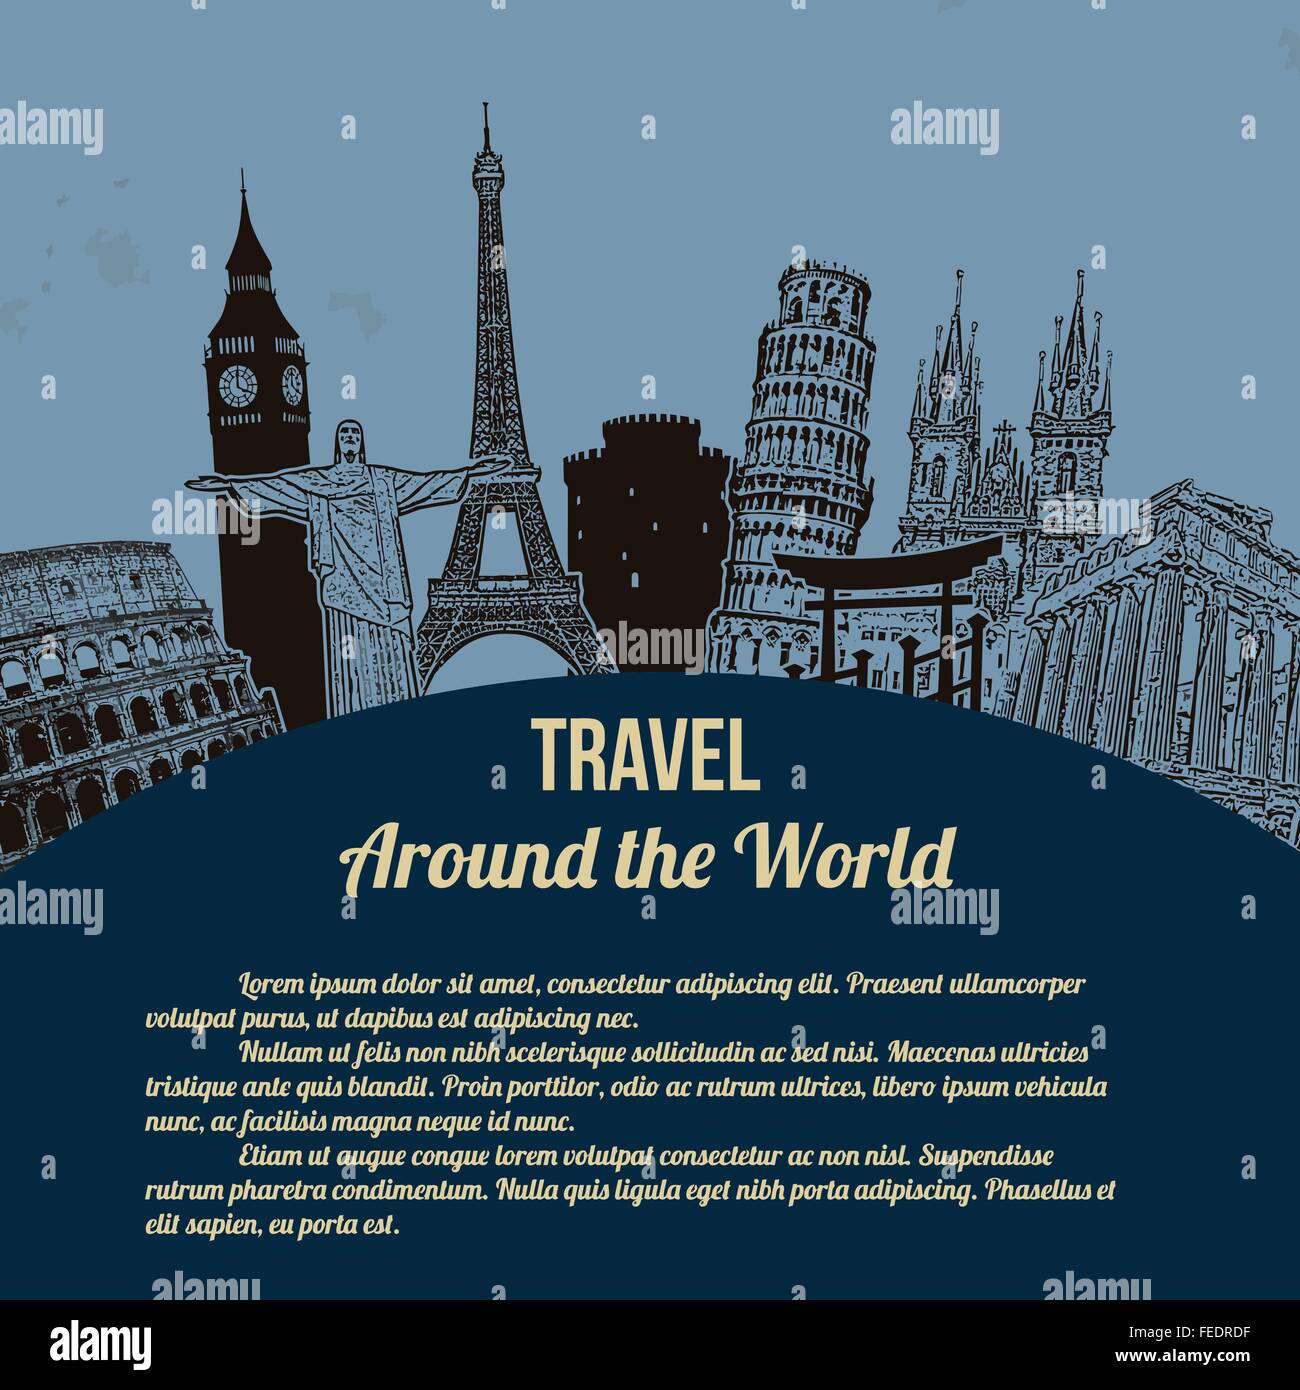 Reise um die Welt, Vintage touristische Plakat auf blauem Hintergrund mit Platz für Ihren Text, Vektor-illustration Stock Vektor